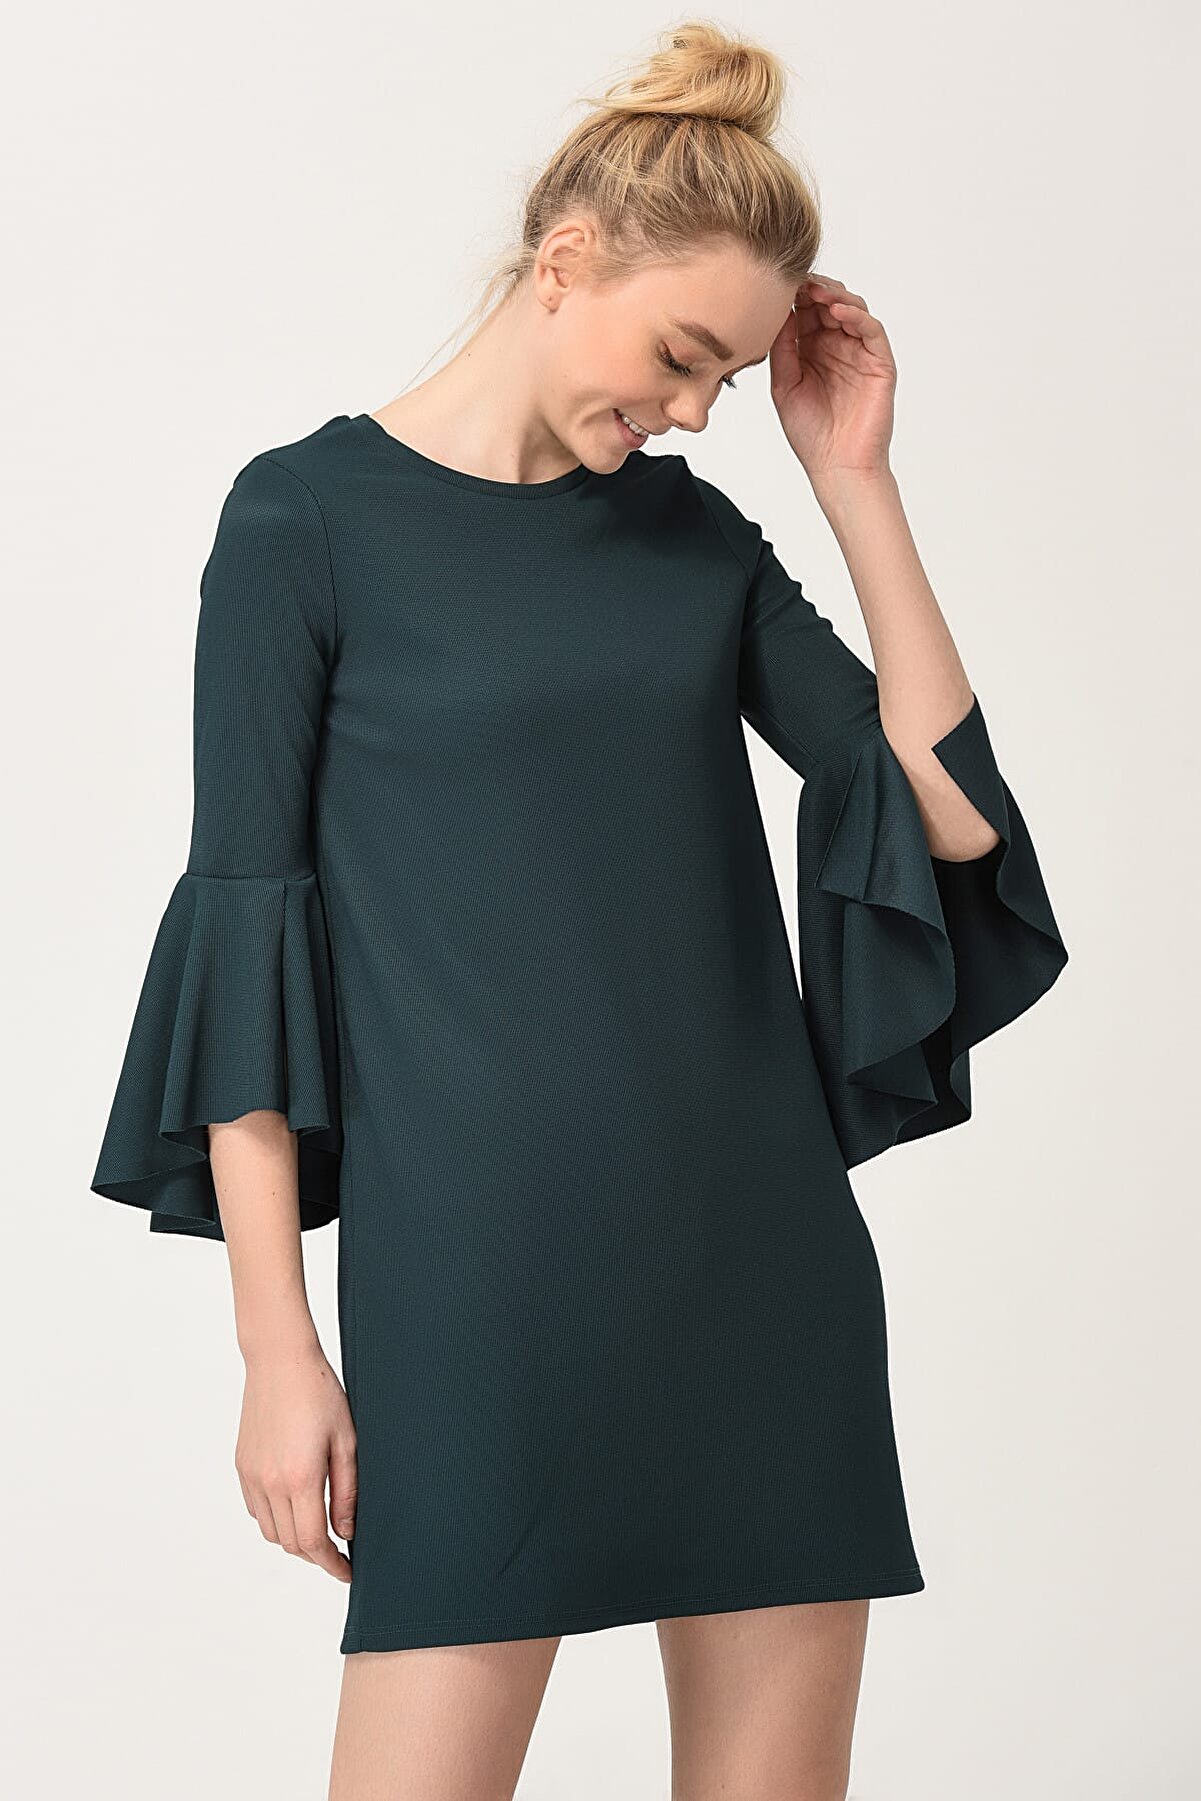 Bershka Kadın Yeşil Elbise 2017-5464-187